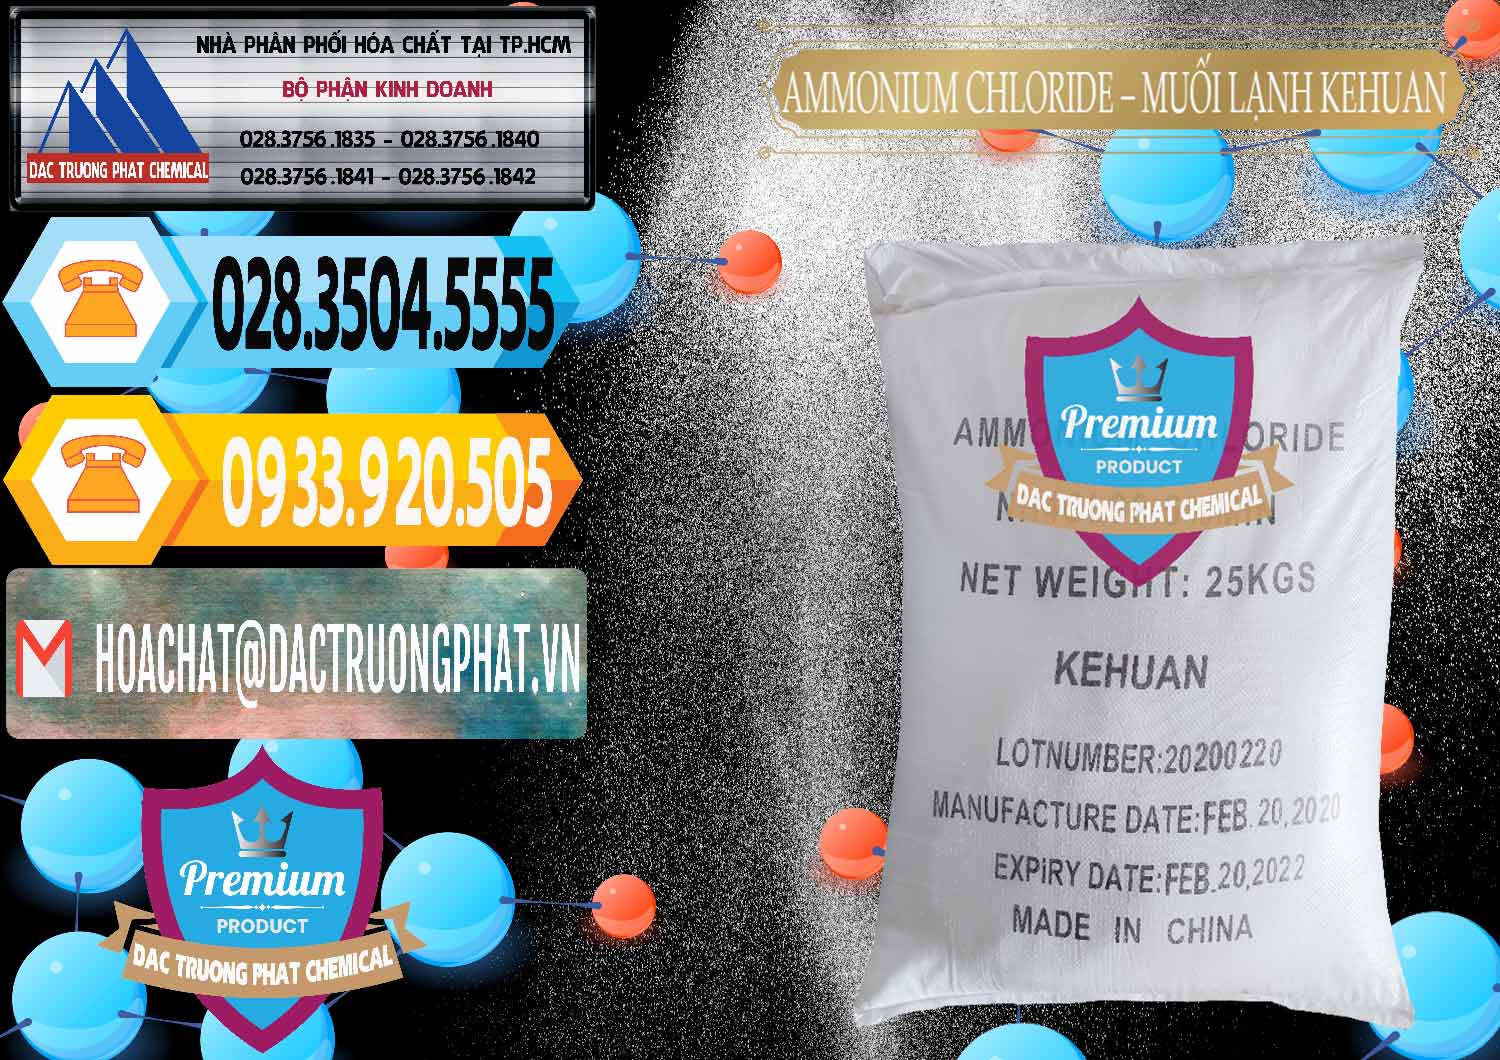 Cung ứng & bán Ammonium Chloride – NH4CL Muối Lạnh Kehuan Trung Quốc China - 0022 - Cty chuyên bán ( phân phối ) hóa chất tại TP.HCM - hoachattayrua.net